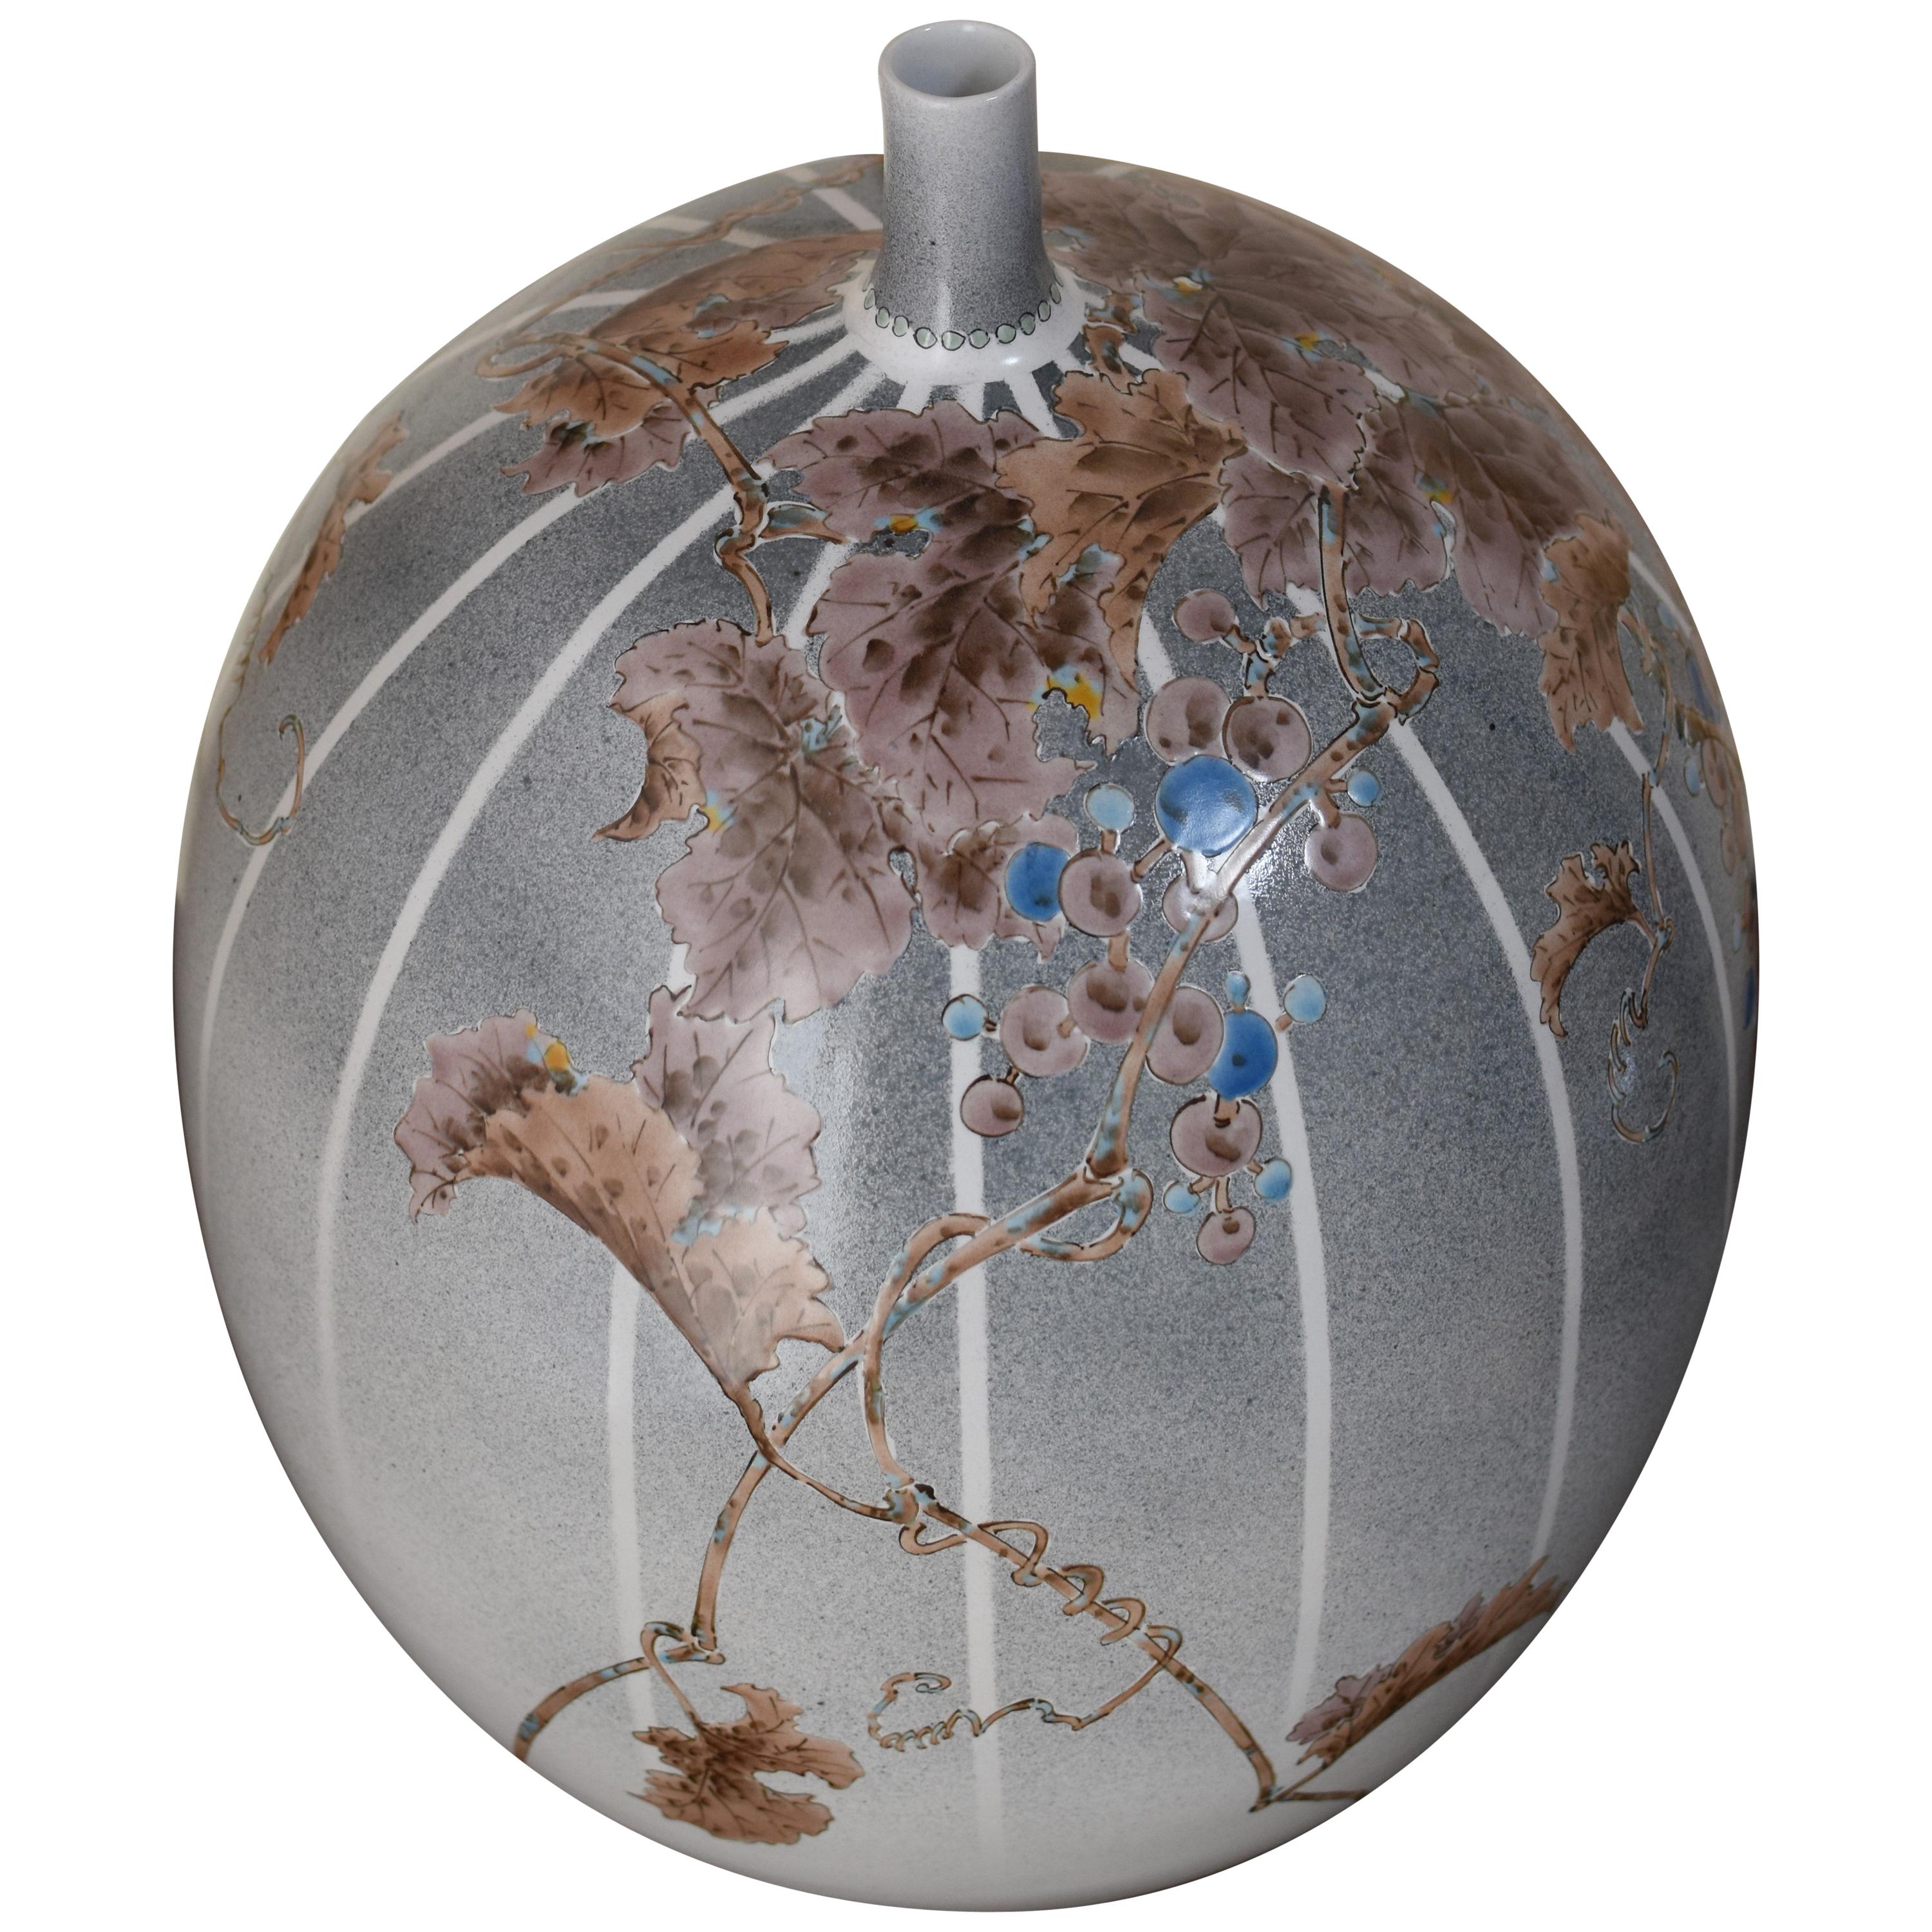 Exceptionnel vase en porcelaine décorative japonaise contemporaine, superbement peint à la main en brun sur un corps en forme d'œuf dans un magnifique fond de rayures sur un dégradé de bleu/gris. Il s'agit d'un chef-d'œuvre d'un maître porcelainier